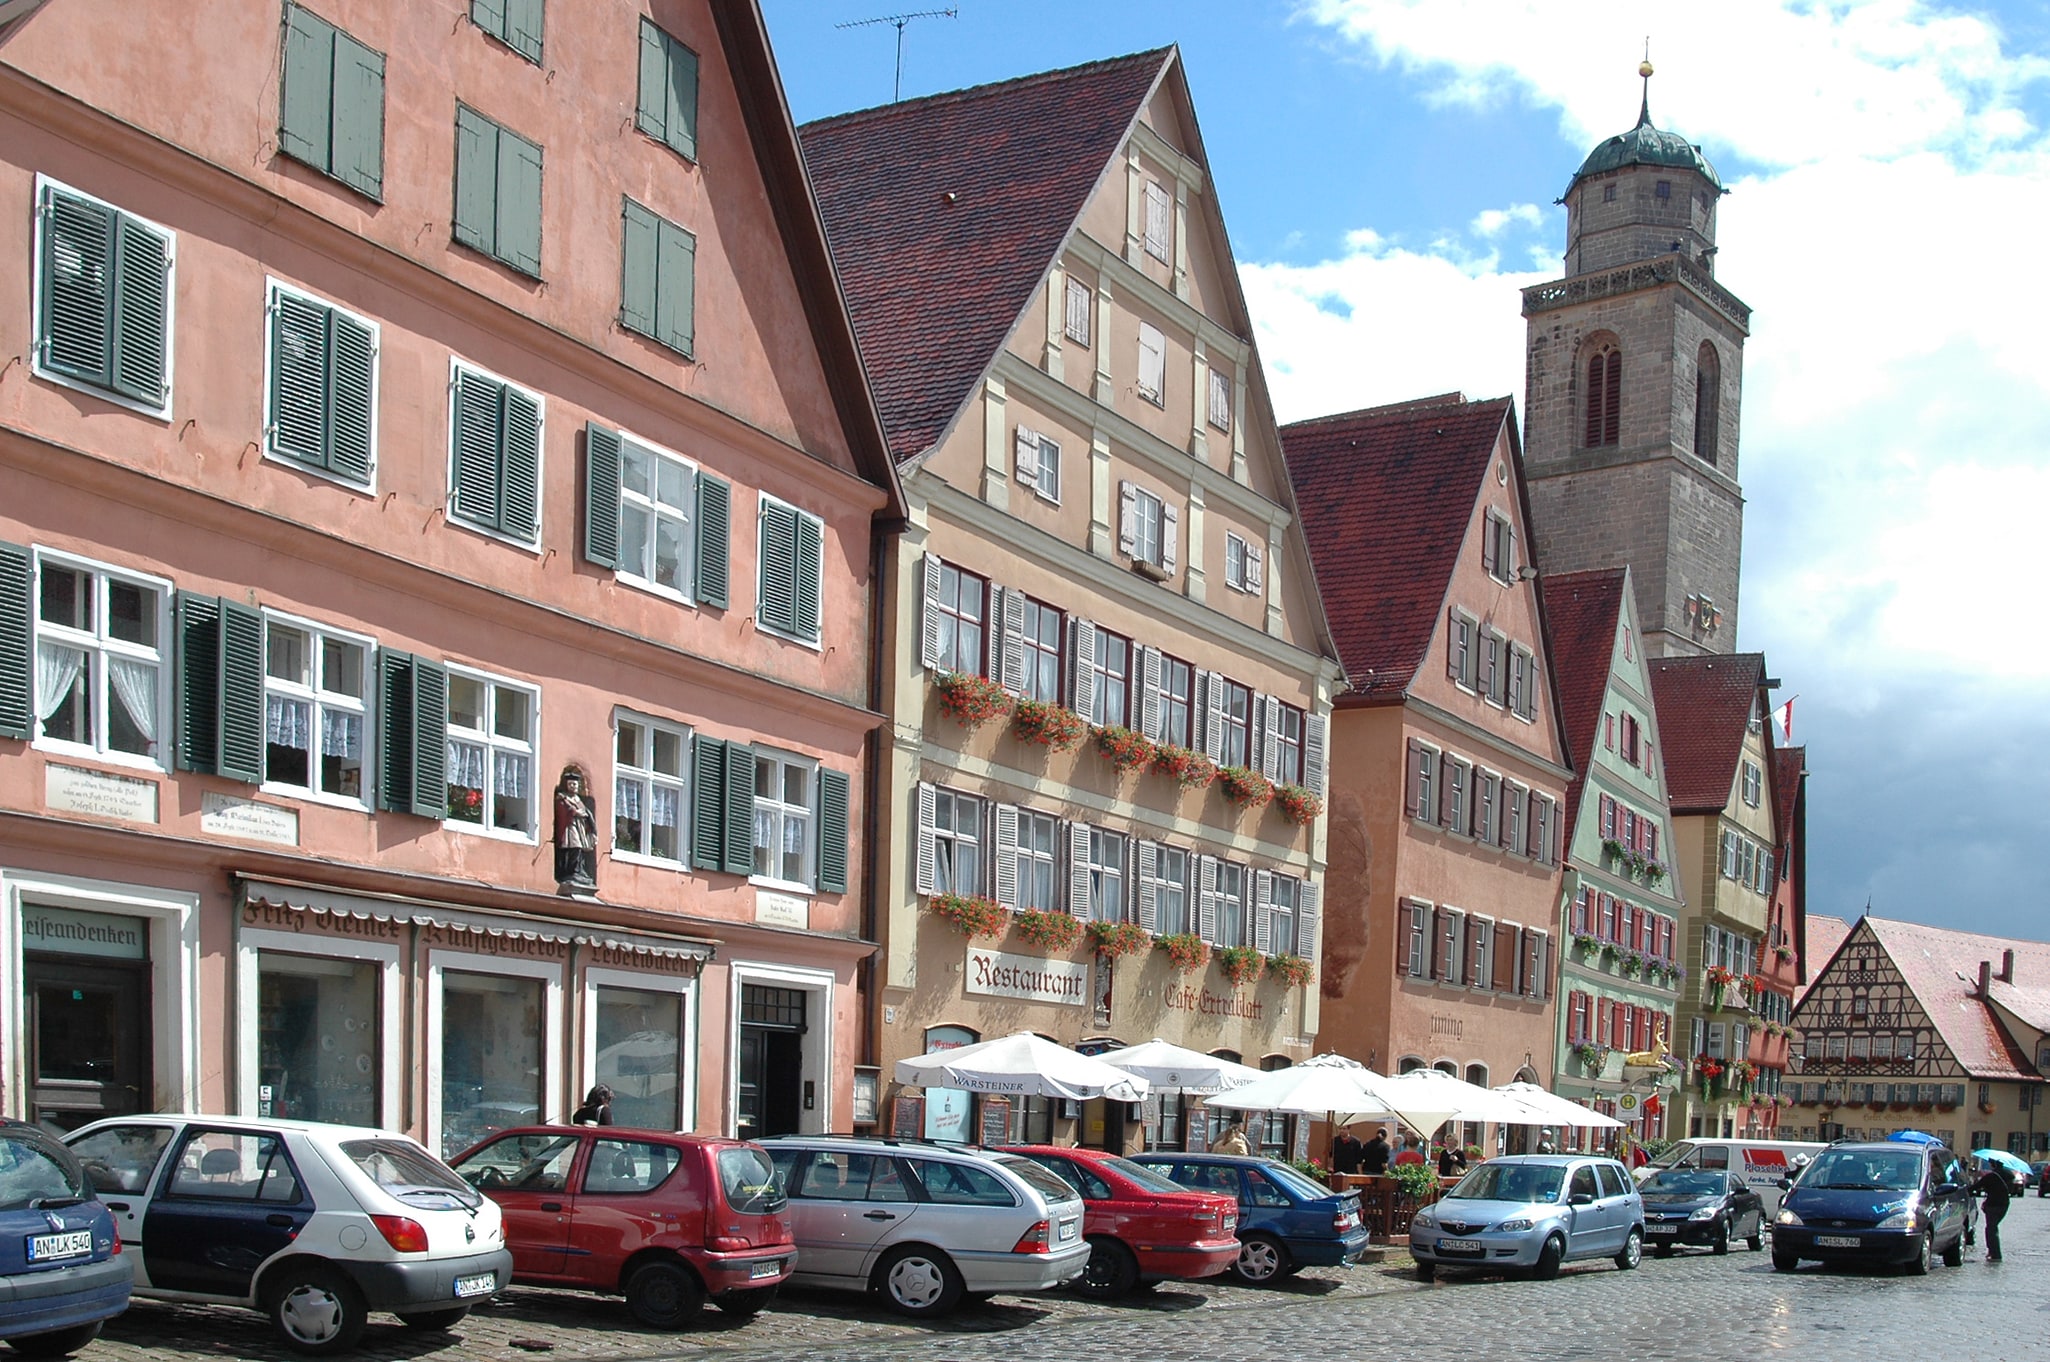 Dinkelsbühl, Germany